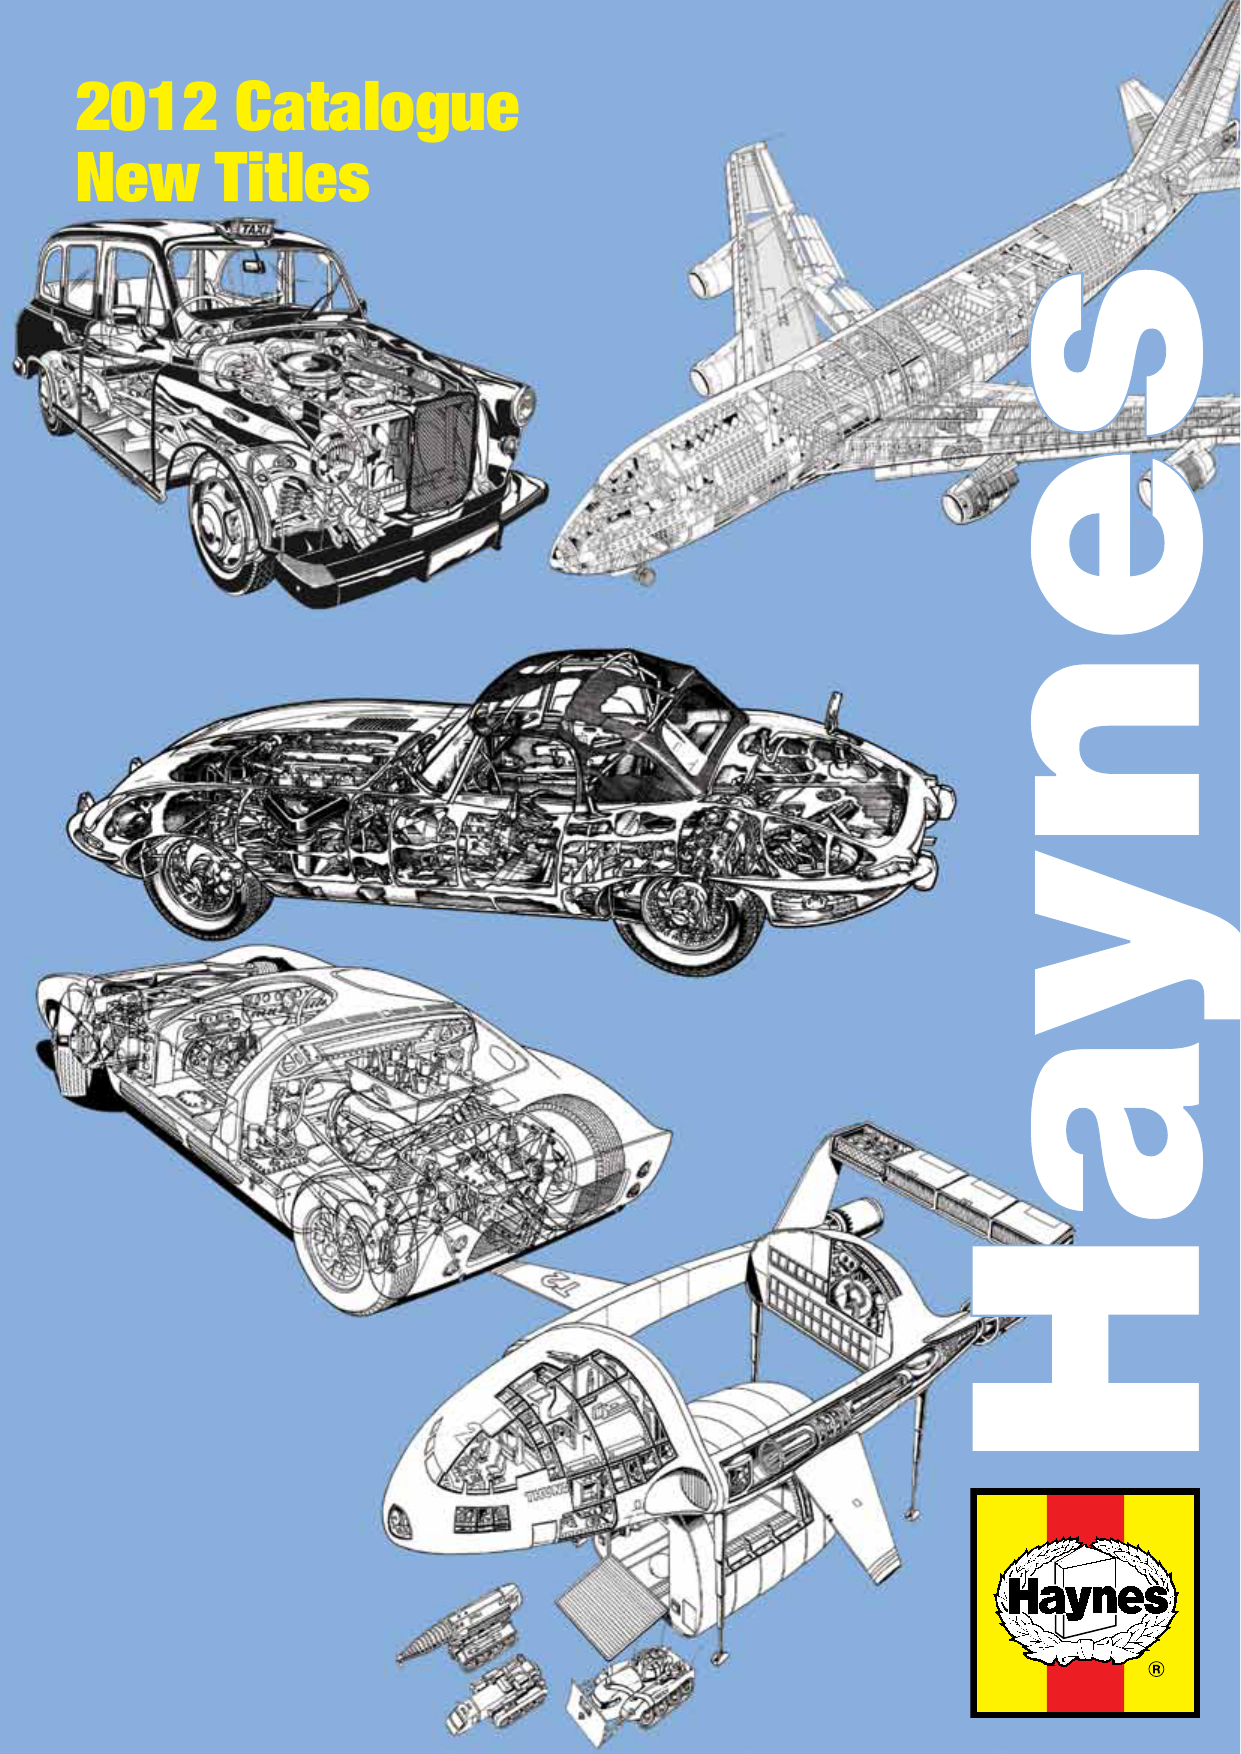 Haynes Manual Fits Suzuki GSX600F 98-04 GSX750 F 98-02 